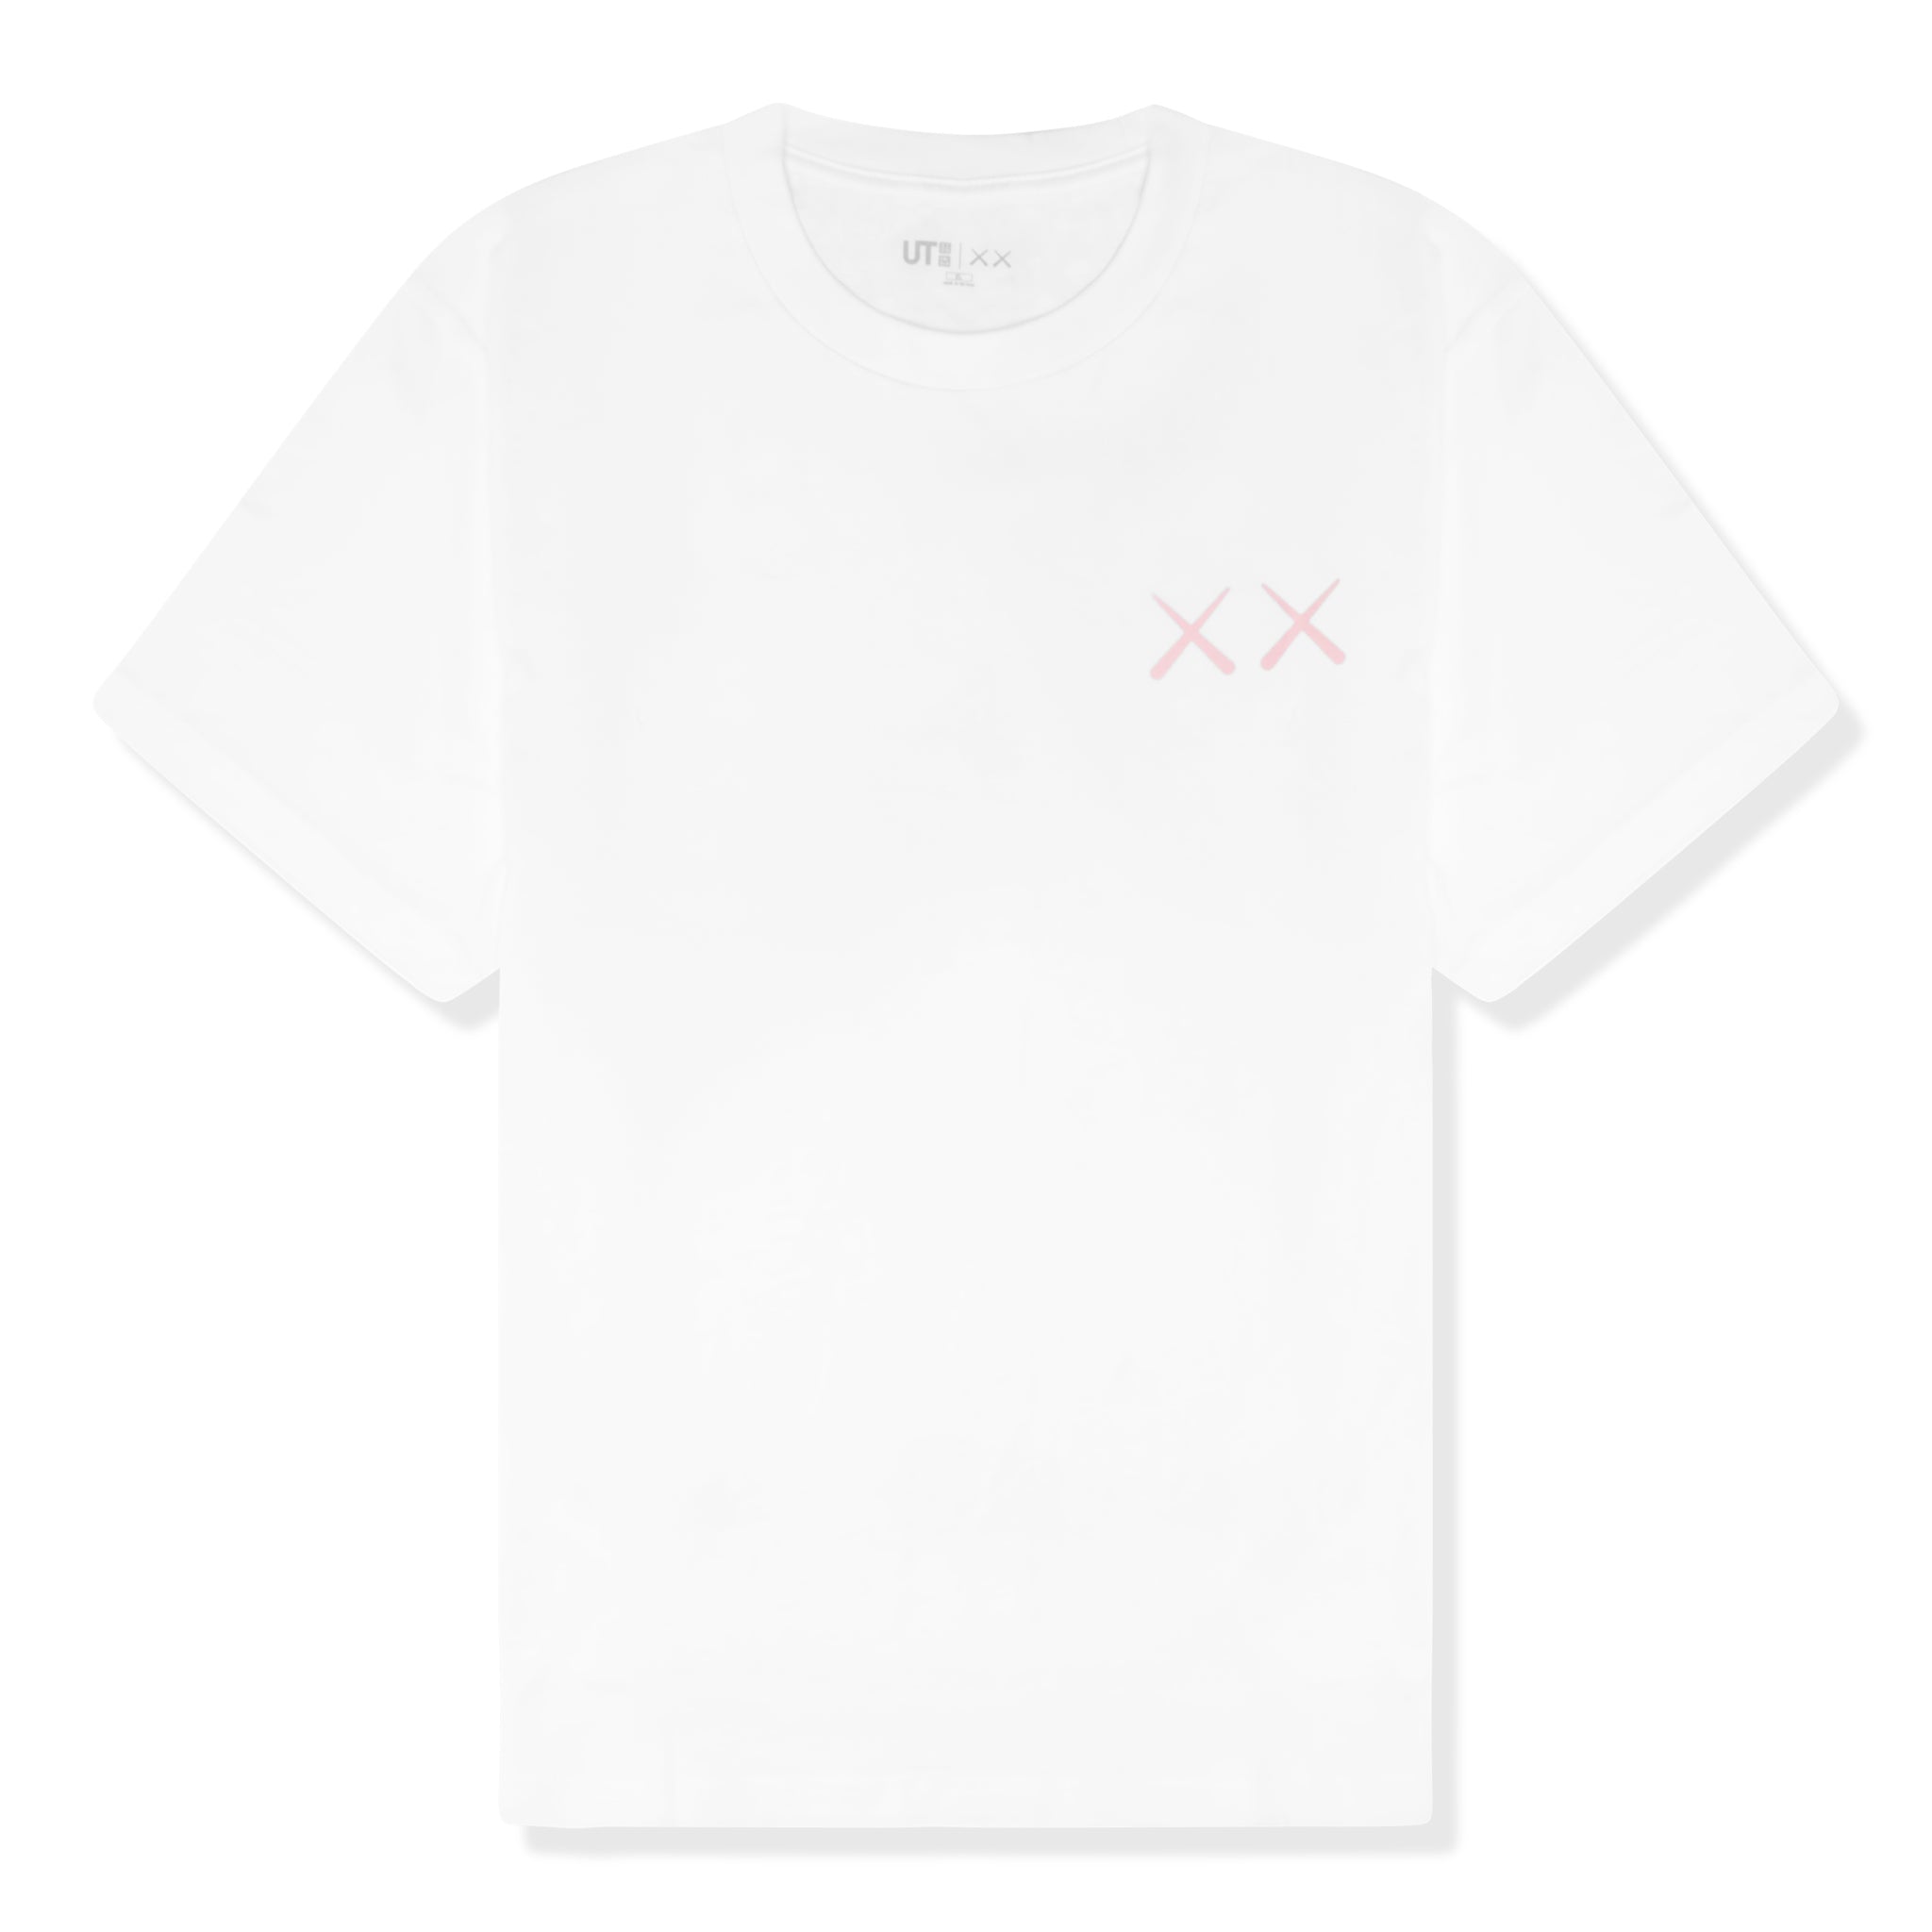 Kaws x Uniqlo UT Graphic White T Shirt & 467774